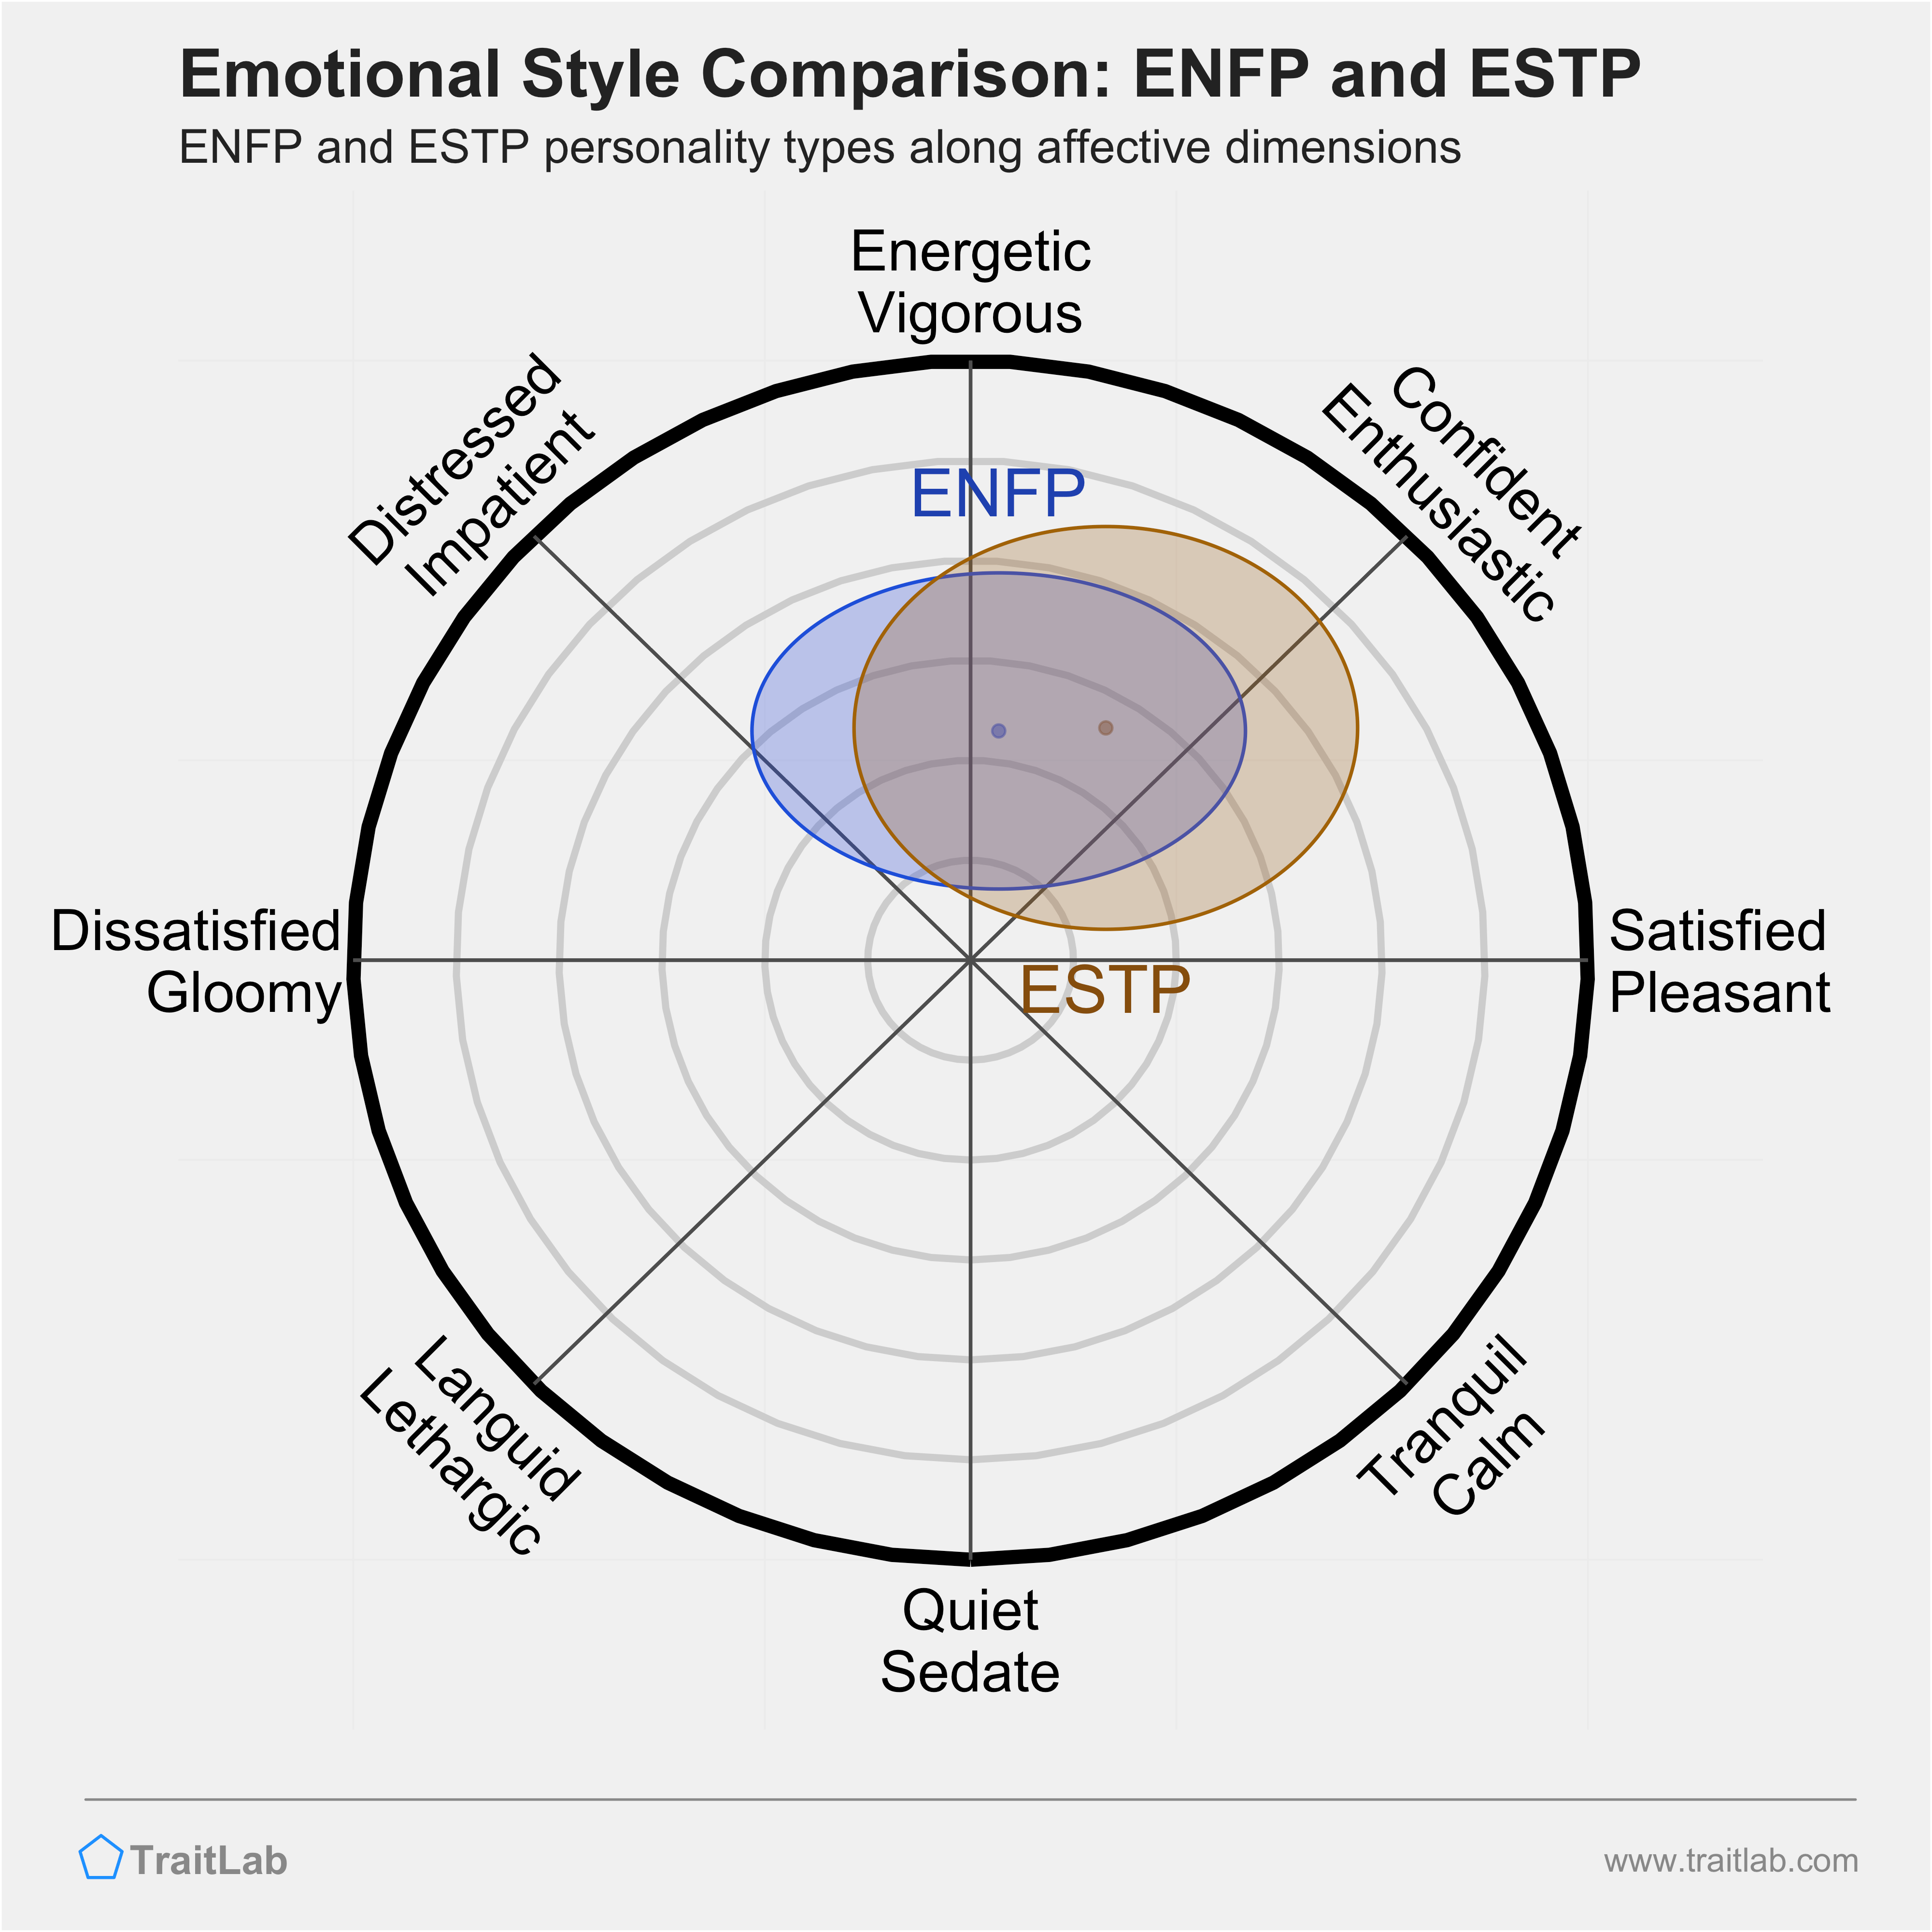 ENFP and ESTP comparison across emotional (affective) dimensions